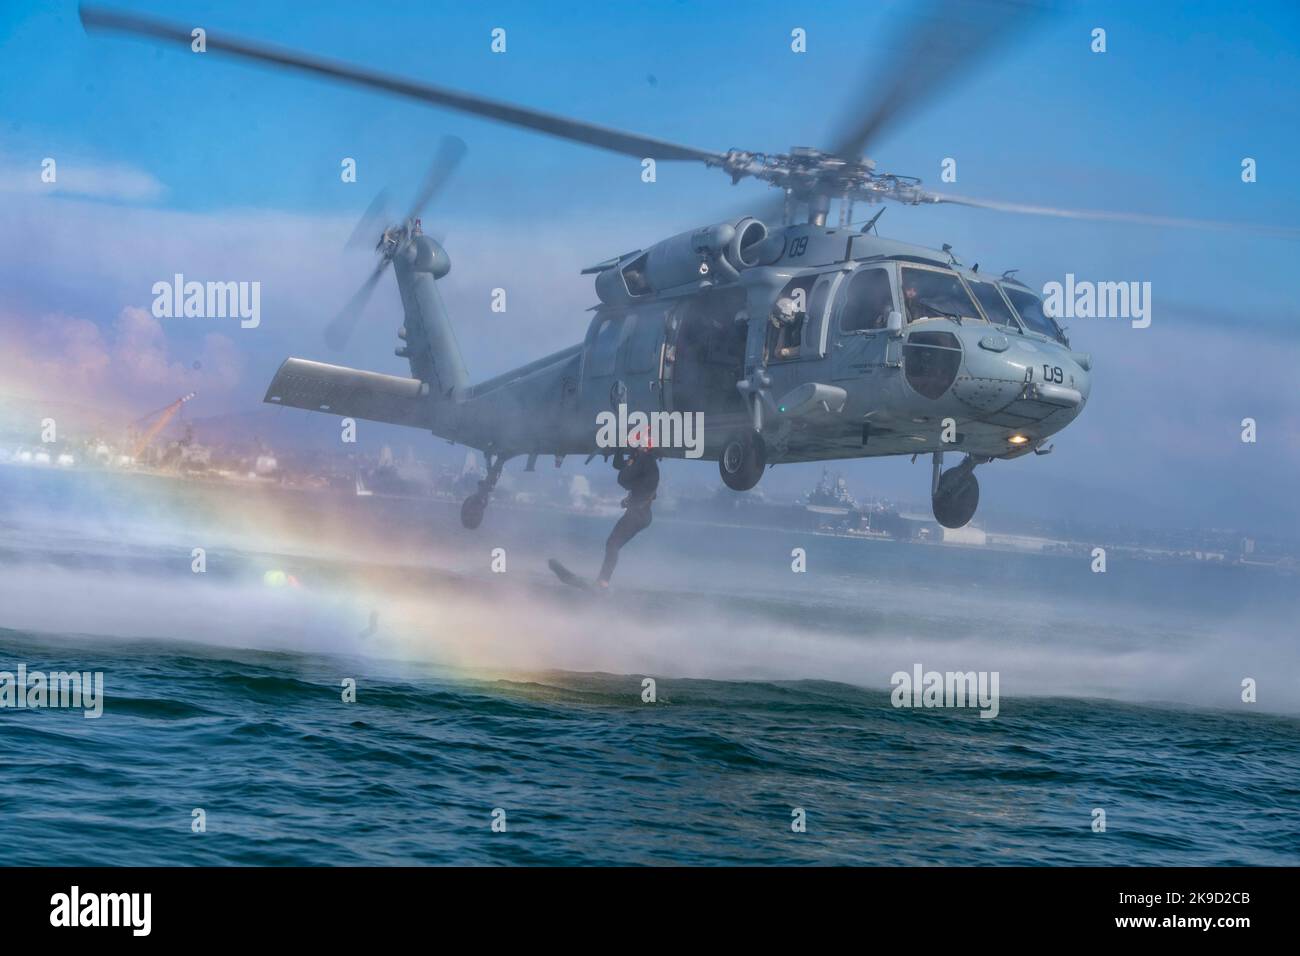 Ein US Naval Aircewman (Hubschrauber), der dem Chief of Naval Operations (CNO) Search and Rescue Model Manager (SARMM) der Helicopter Sea Combat Squadron (HSC) 3 zugewiesen wurde, springt während einer dynamischen Machbarkeitsstudie in Glorietta Bay in Coronado, Kalifornien, am 25. August 2022 vom MH-60s-Hubschrauber Sikorsky Seahawk. Stockfoto